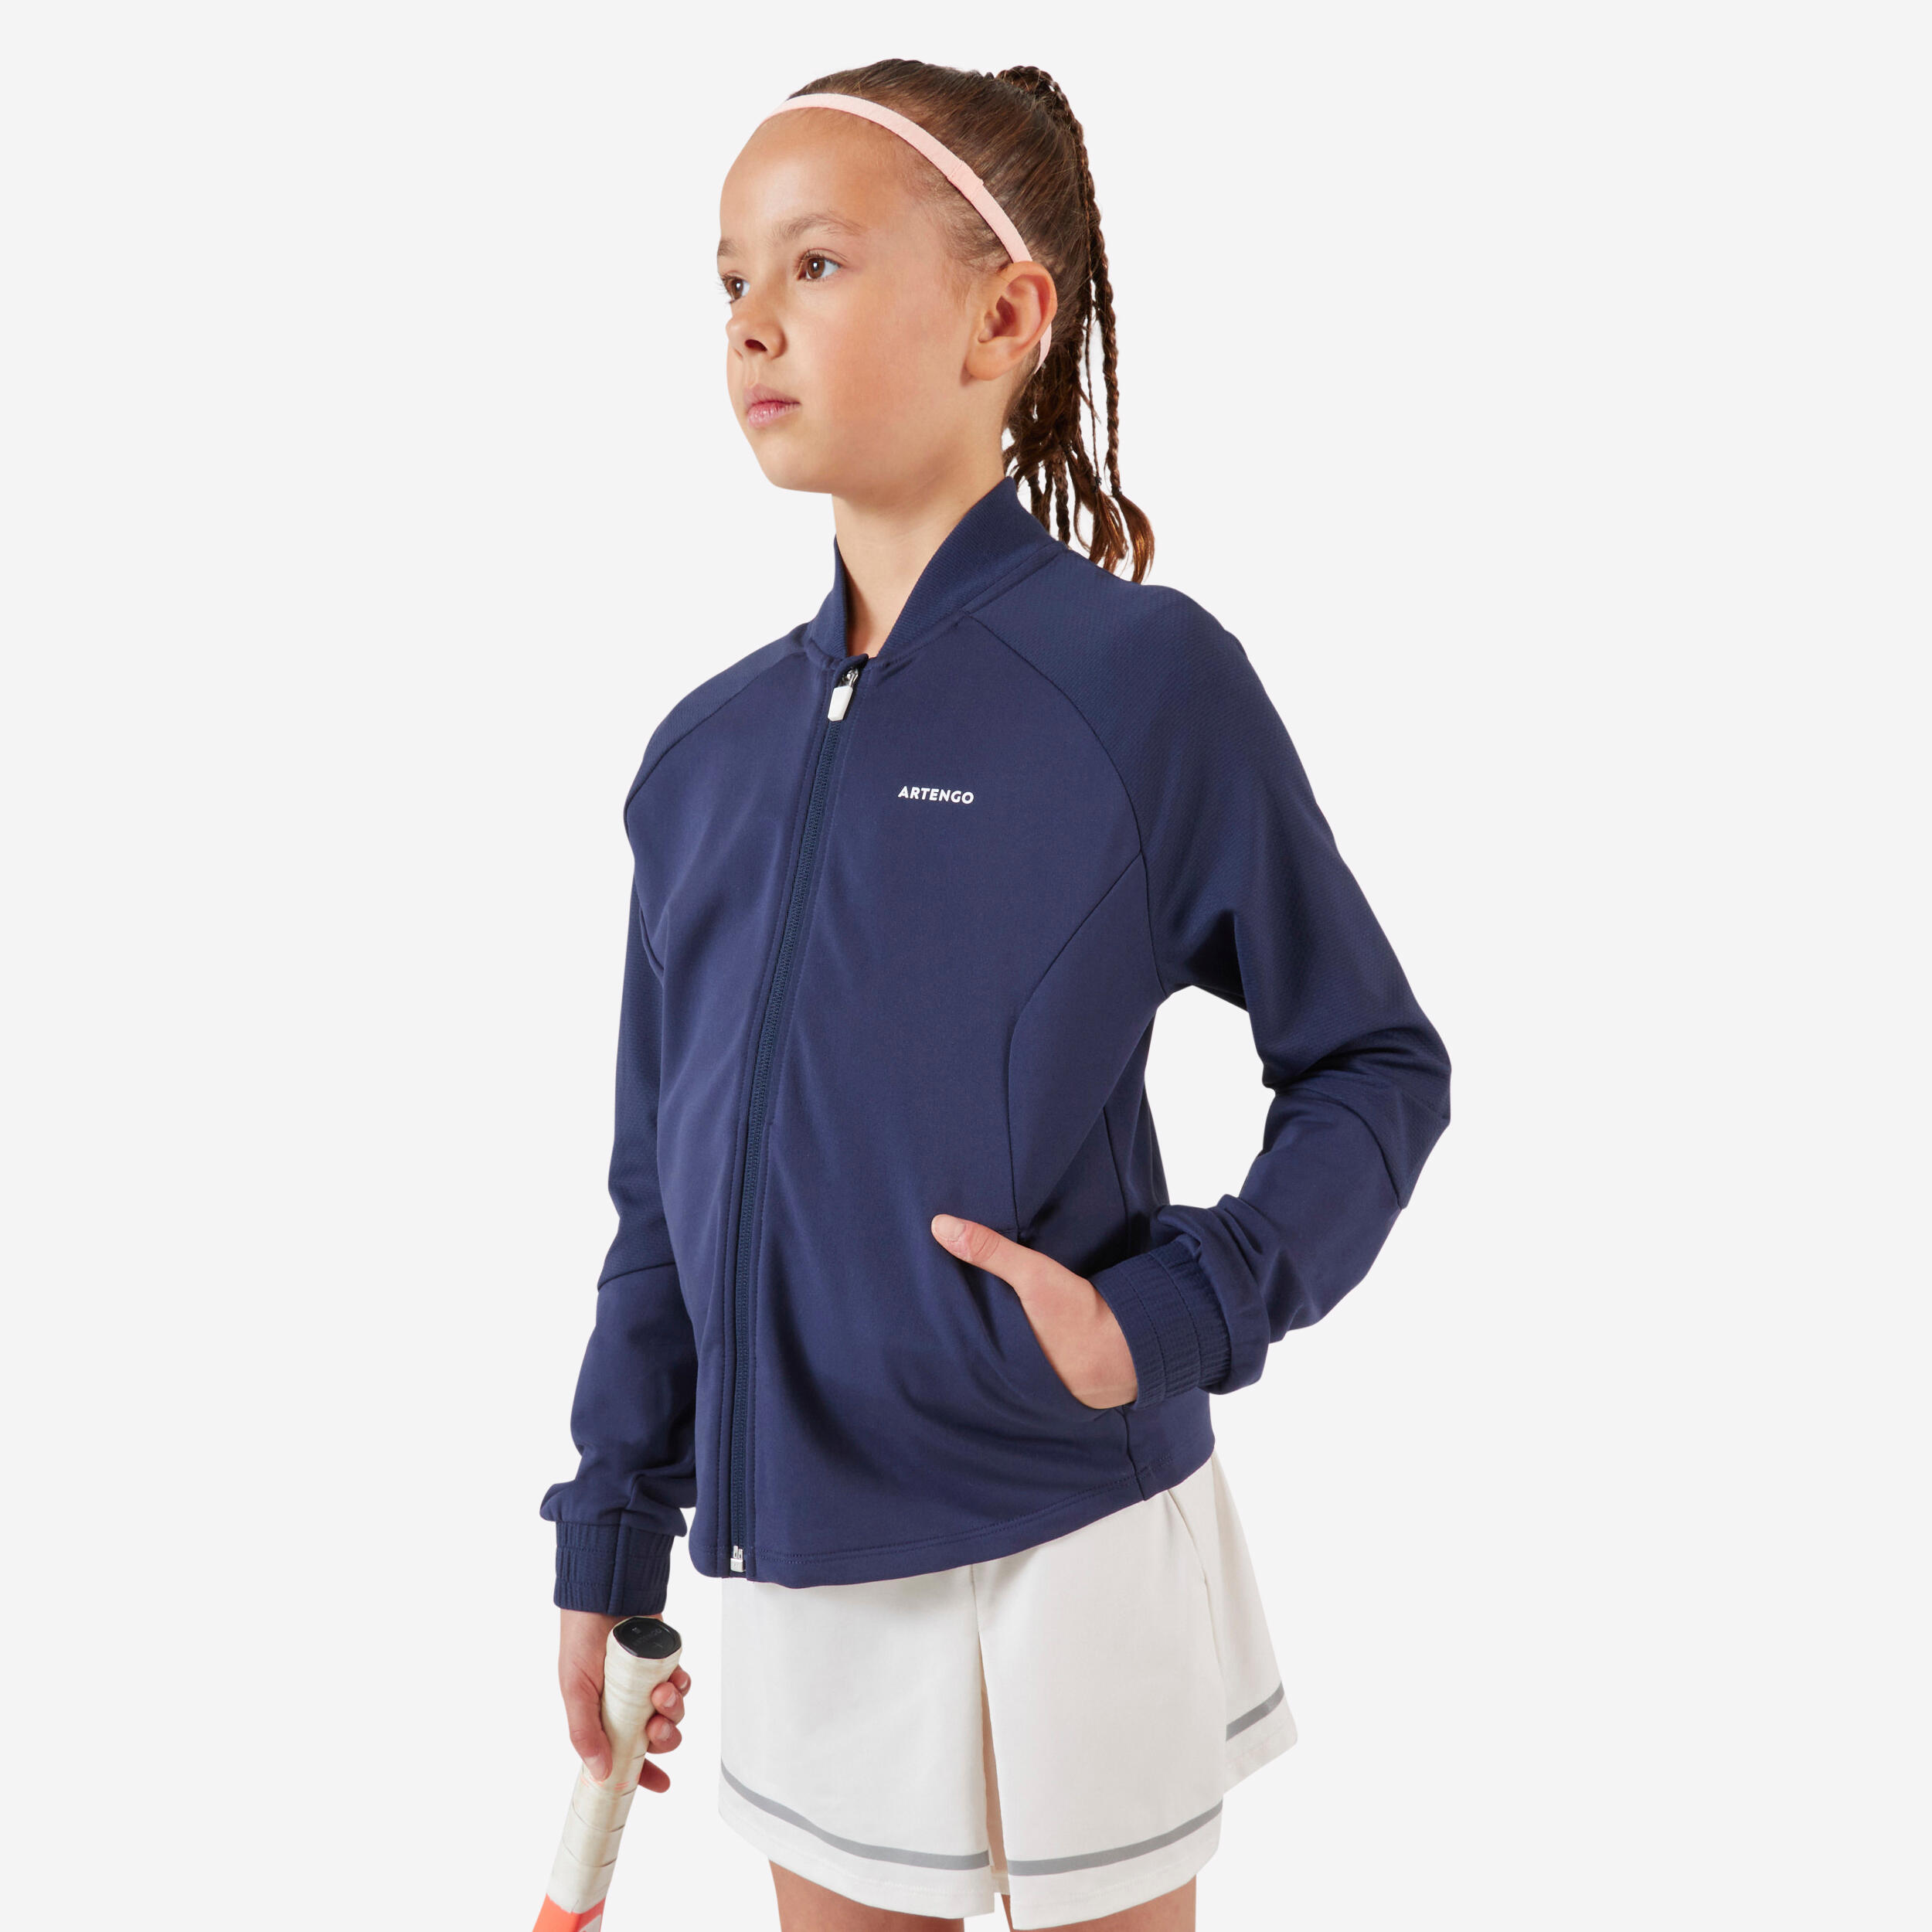 ARTENGO Girls' Tennis Jacket TJK500 - Navy Blue